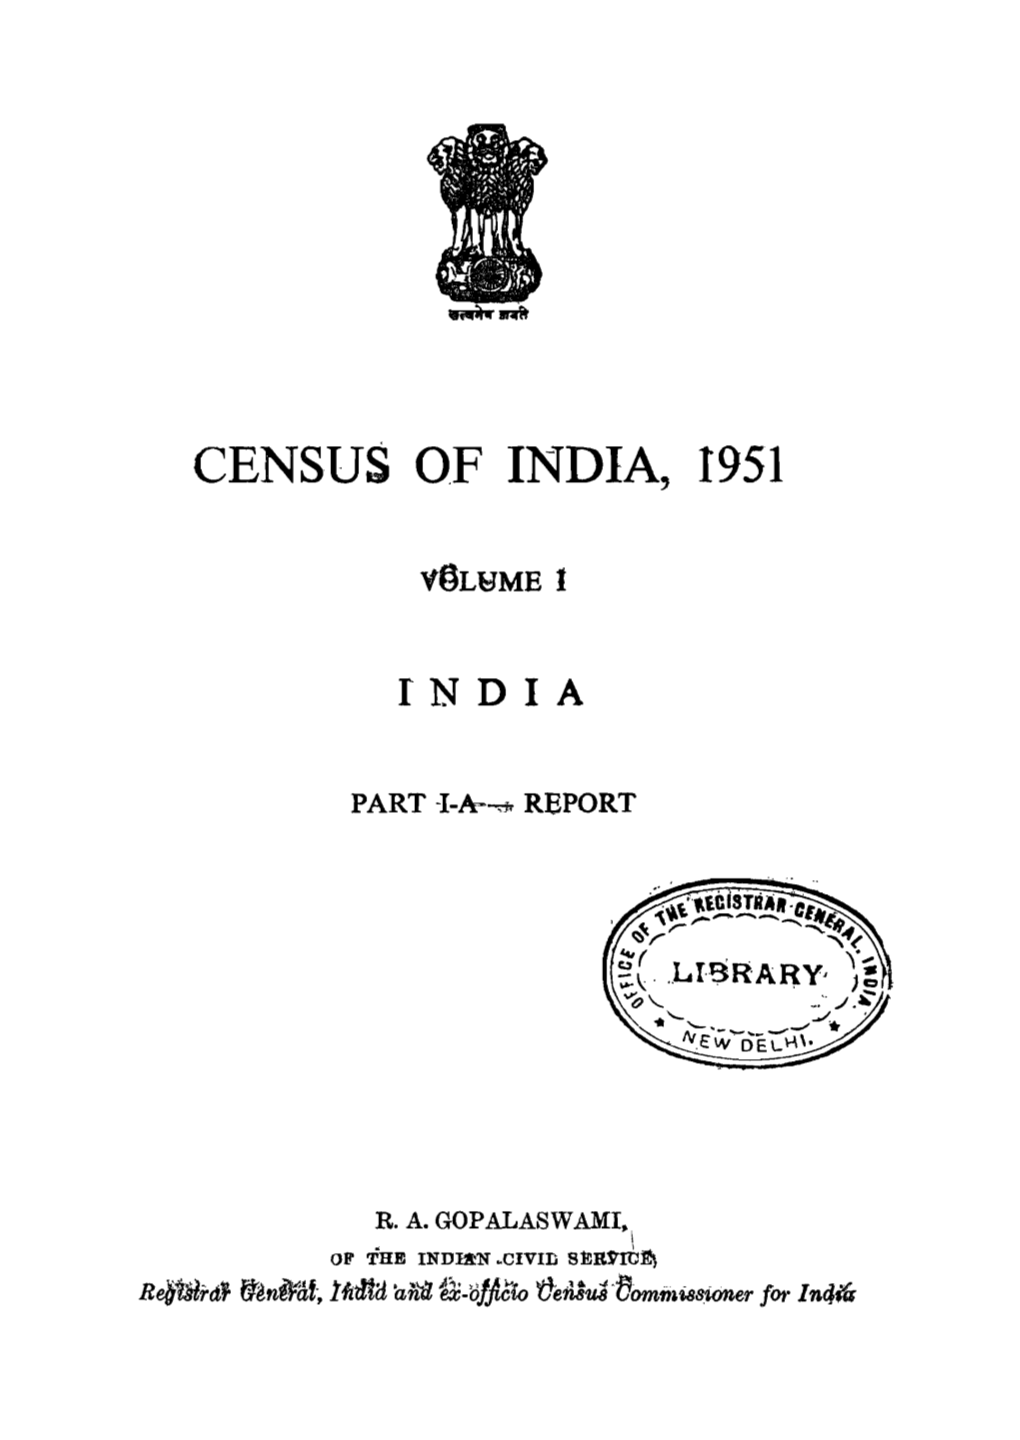 Report, Volume-1, India